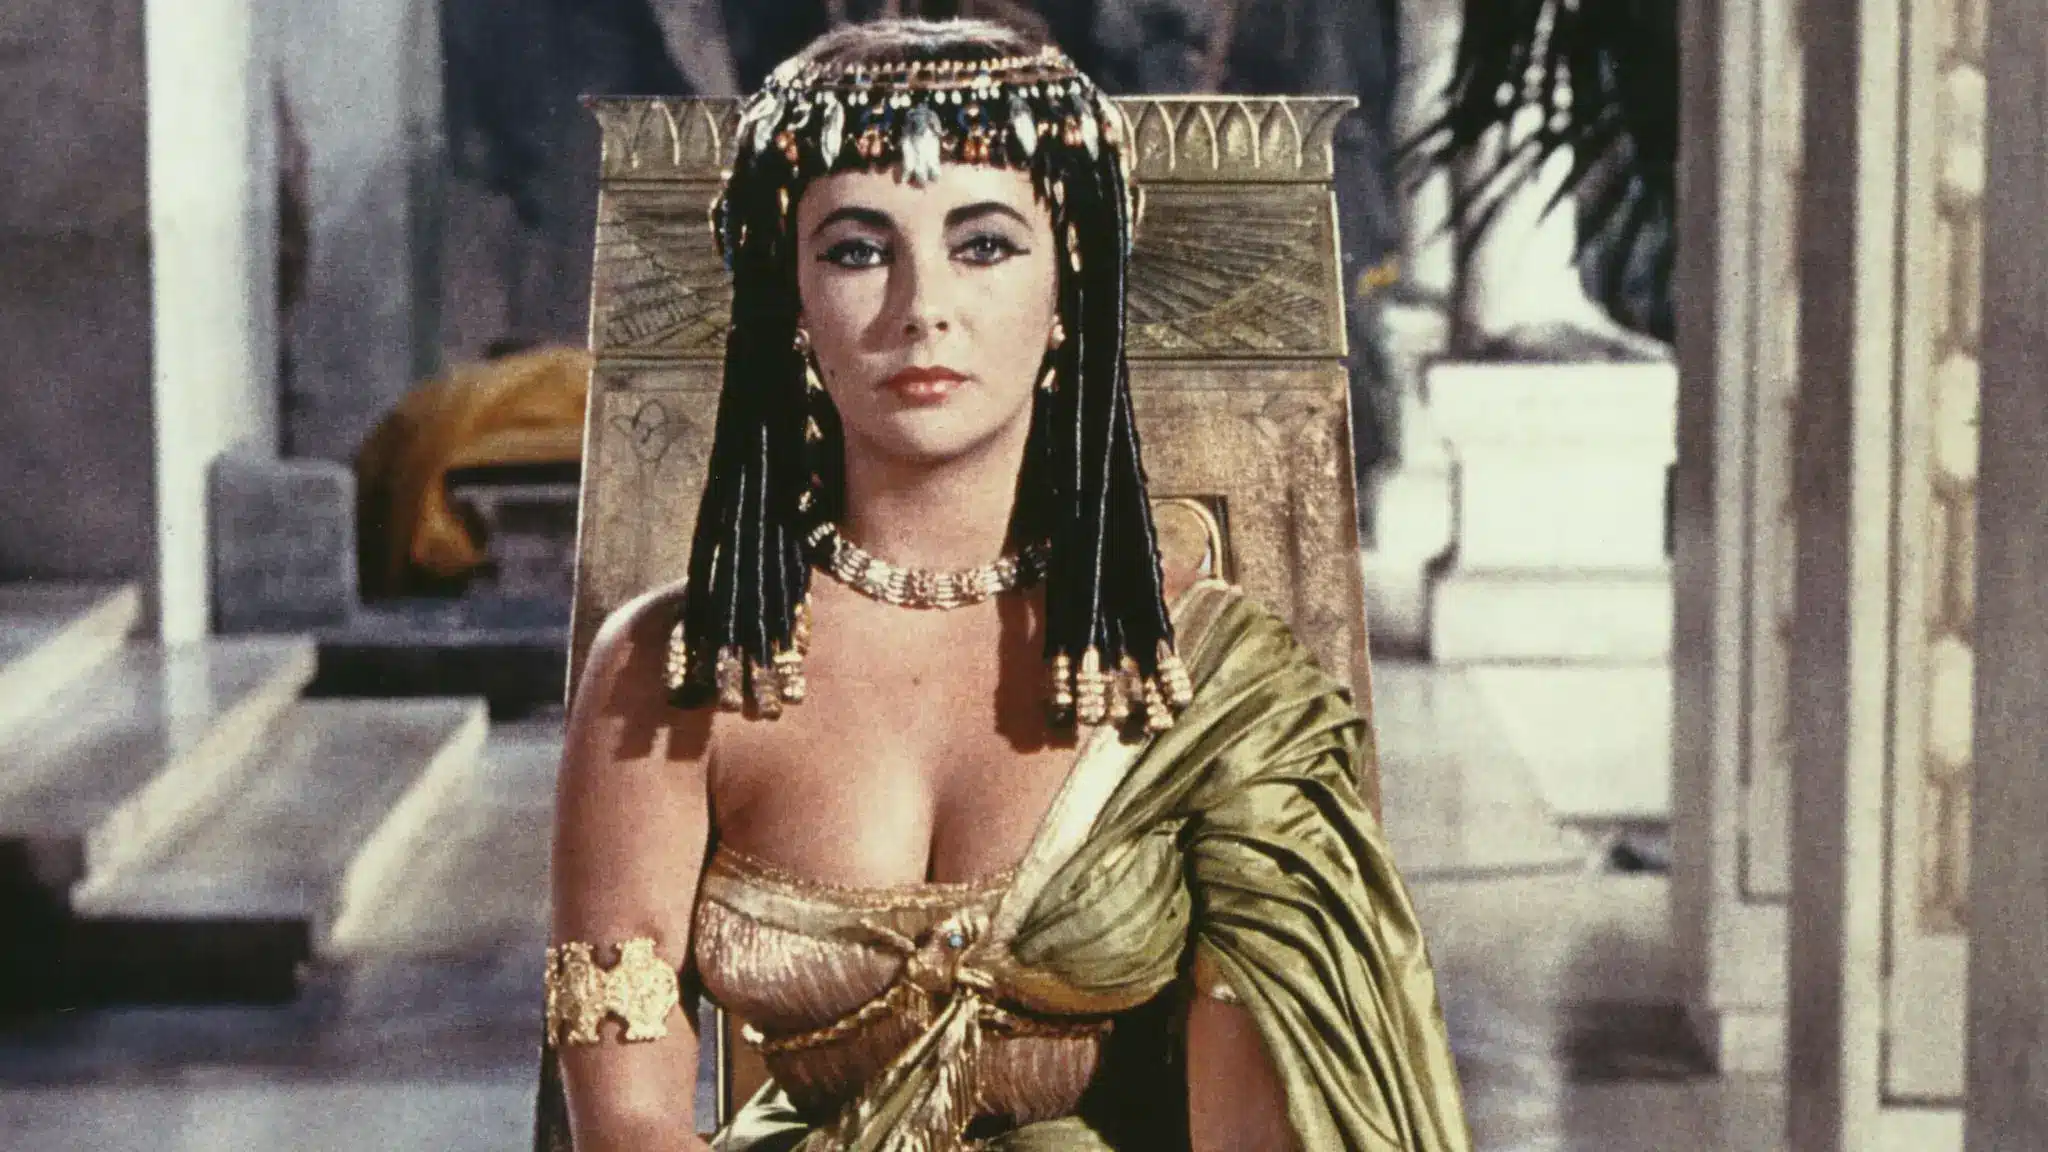 A cleopatra era uma mulher negra